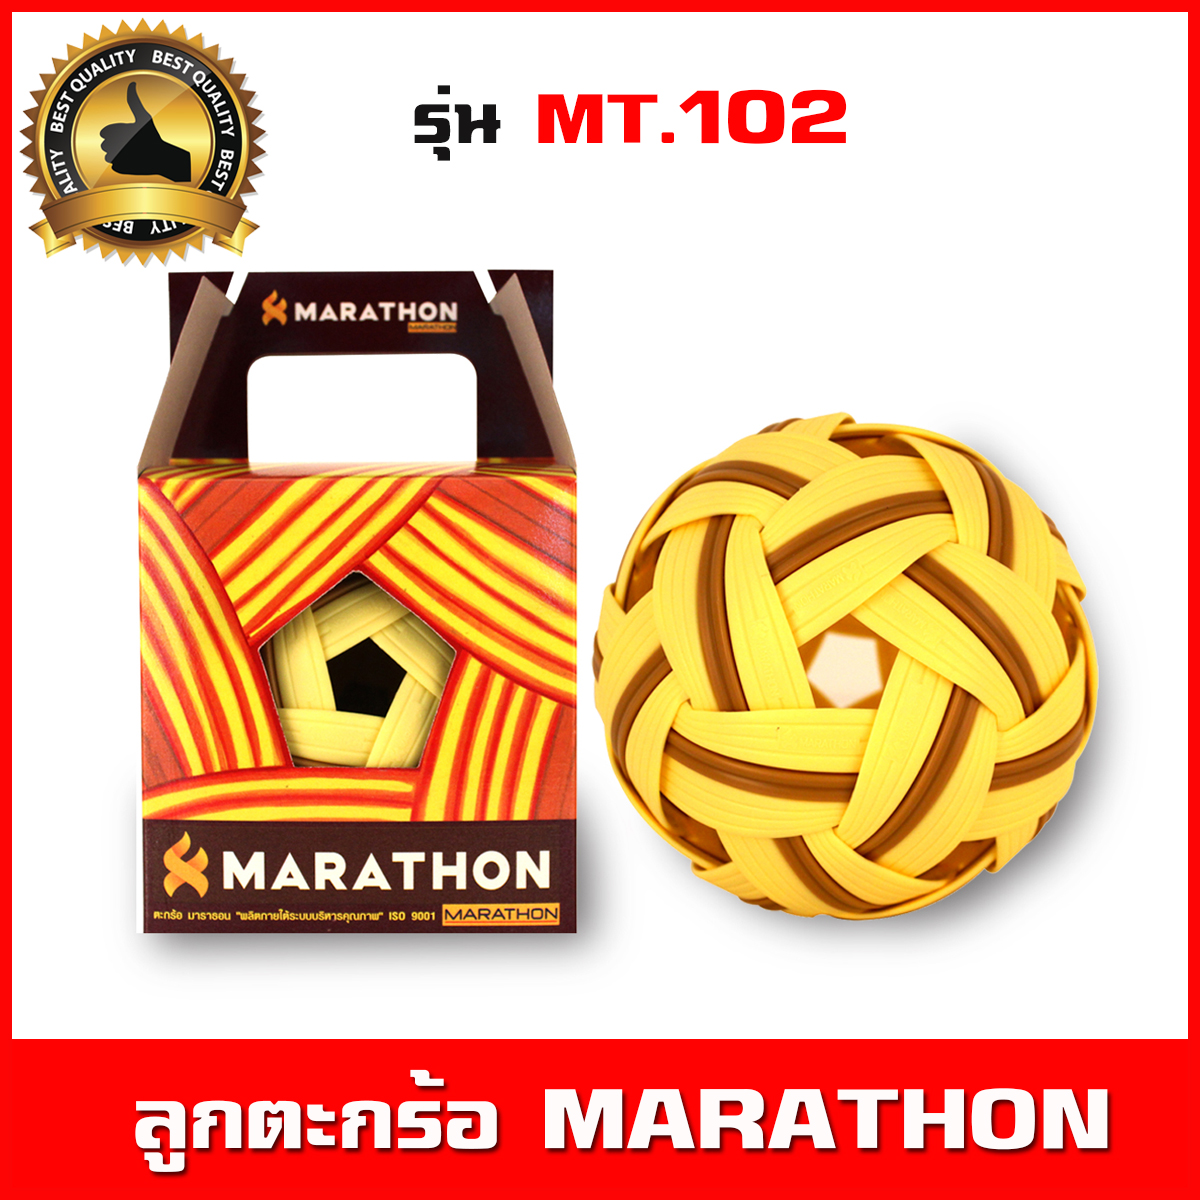 ลูกตะกร้อ Marathon รุ่น MT.102 ใช้ฝึกซ้อมขั้นพื้นฐาน เตะตะกร้อ เซปักตระกร้อ ผลิตจากใยสังเคราะห์ สีเหลือง-น้ำตาล น้ำหนักมาตรฐาน(Takraw ball)